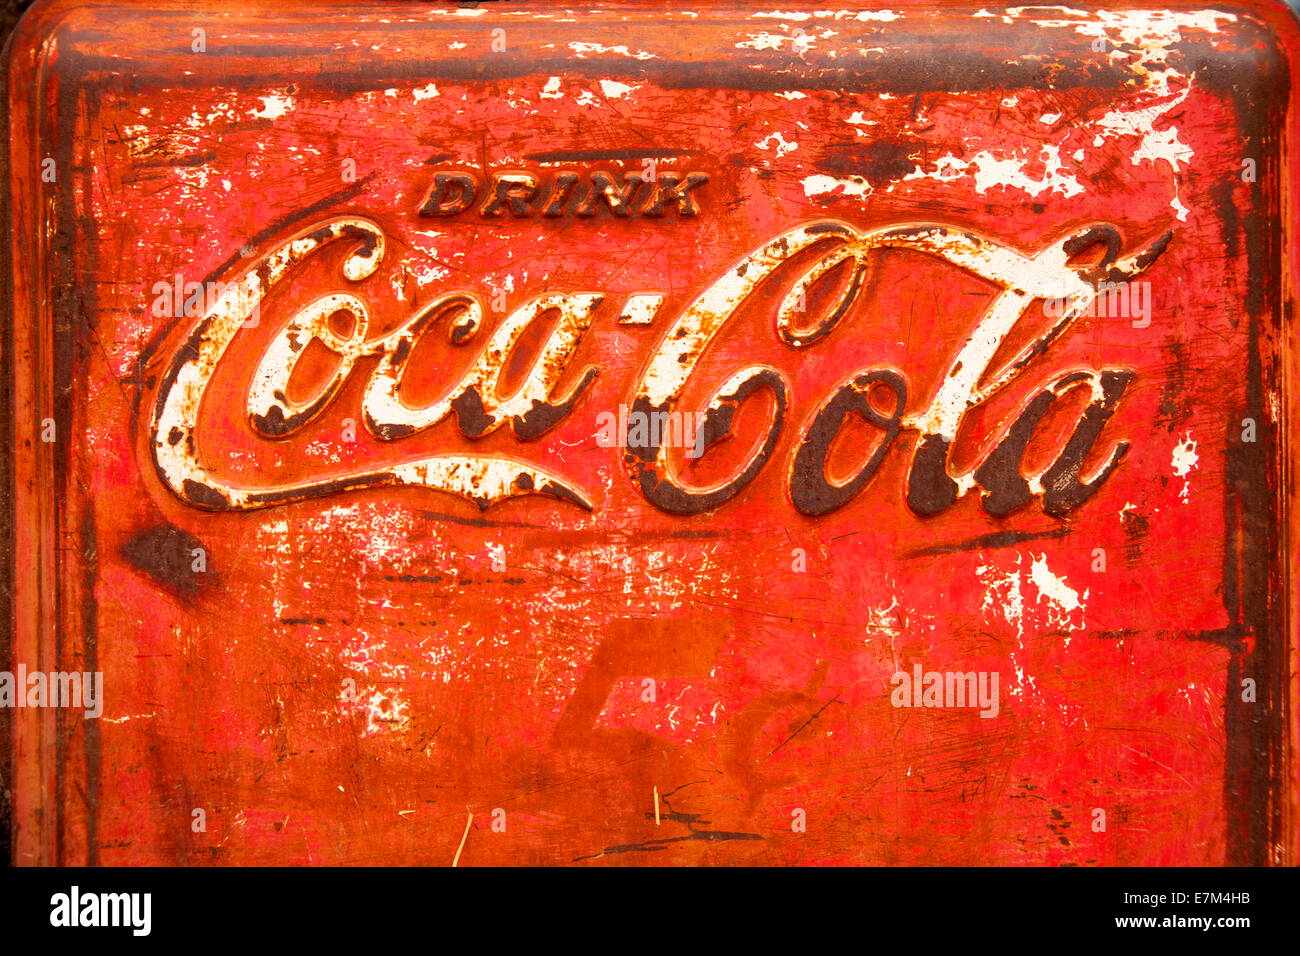 El logo de Coca-Cola aparece en Spencerian script en un enfriador de hielo oxidado. Foto de stock